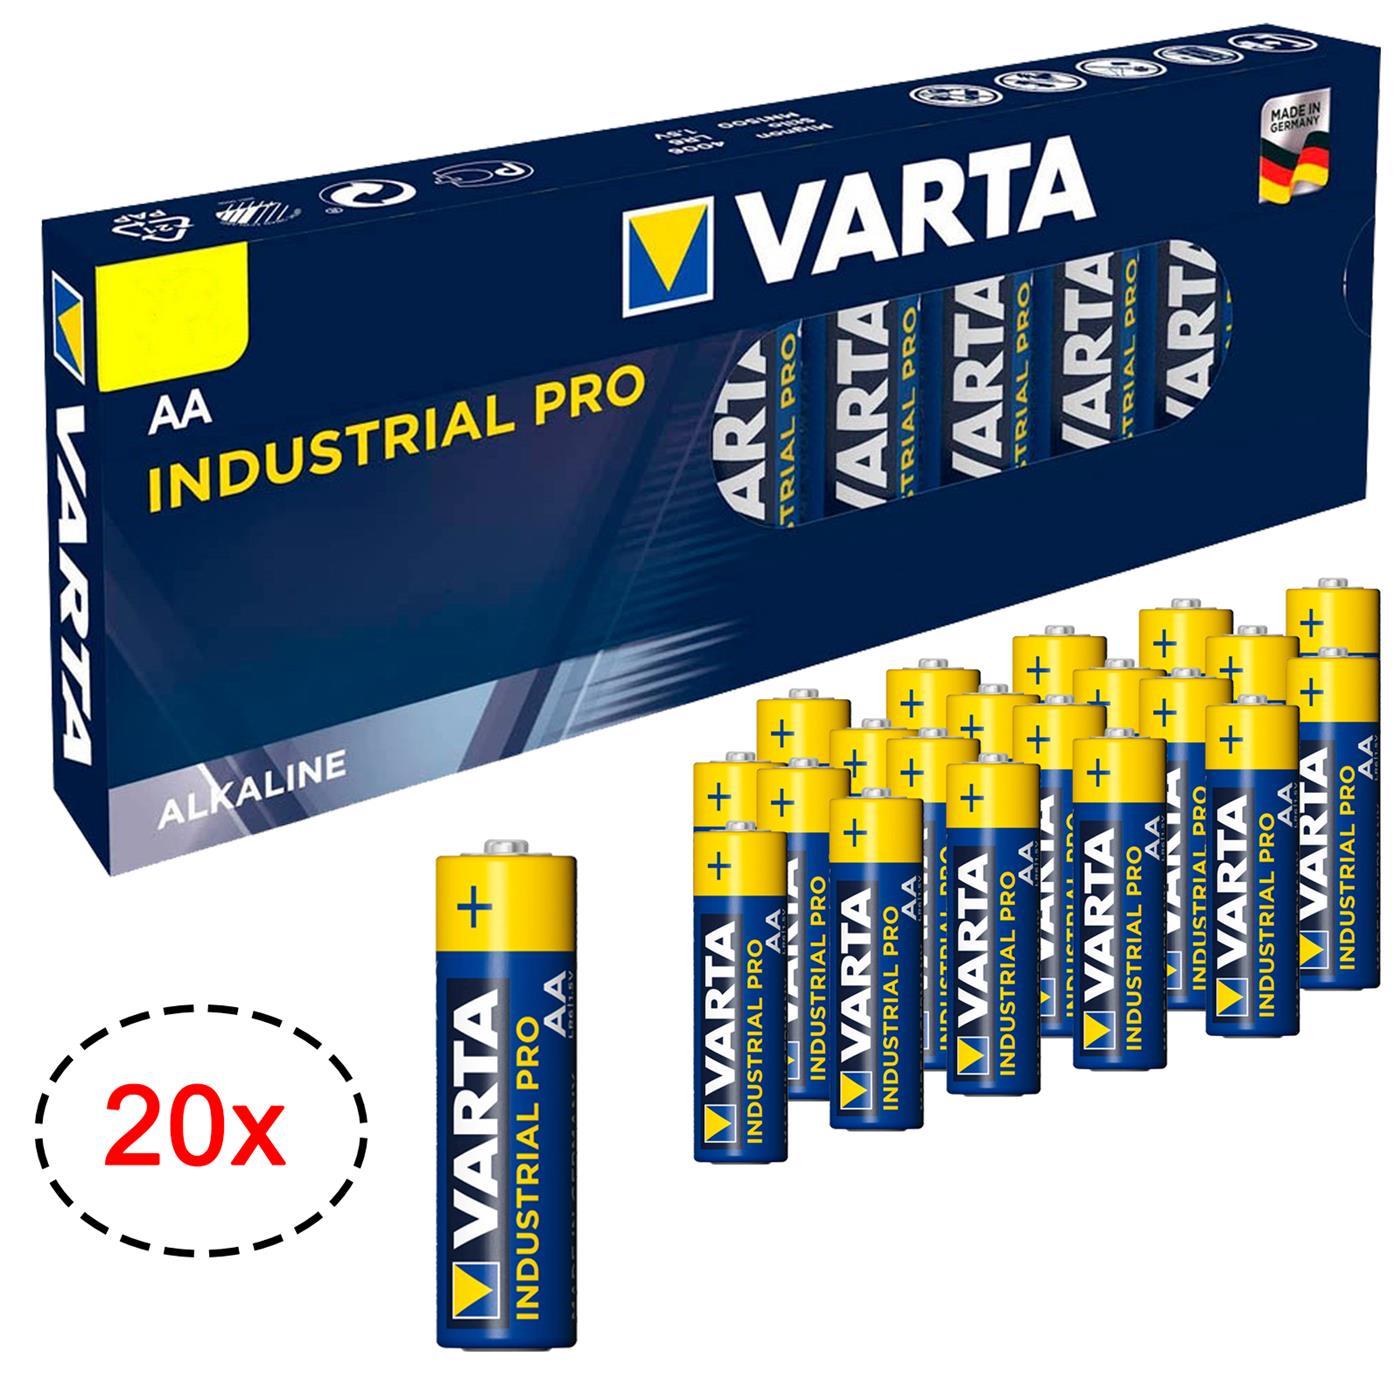 20x VARTA Industrial PRO Mignon AA LR06 LR 06 1.5V Batterien Alkaline Batterie 